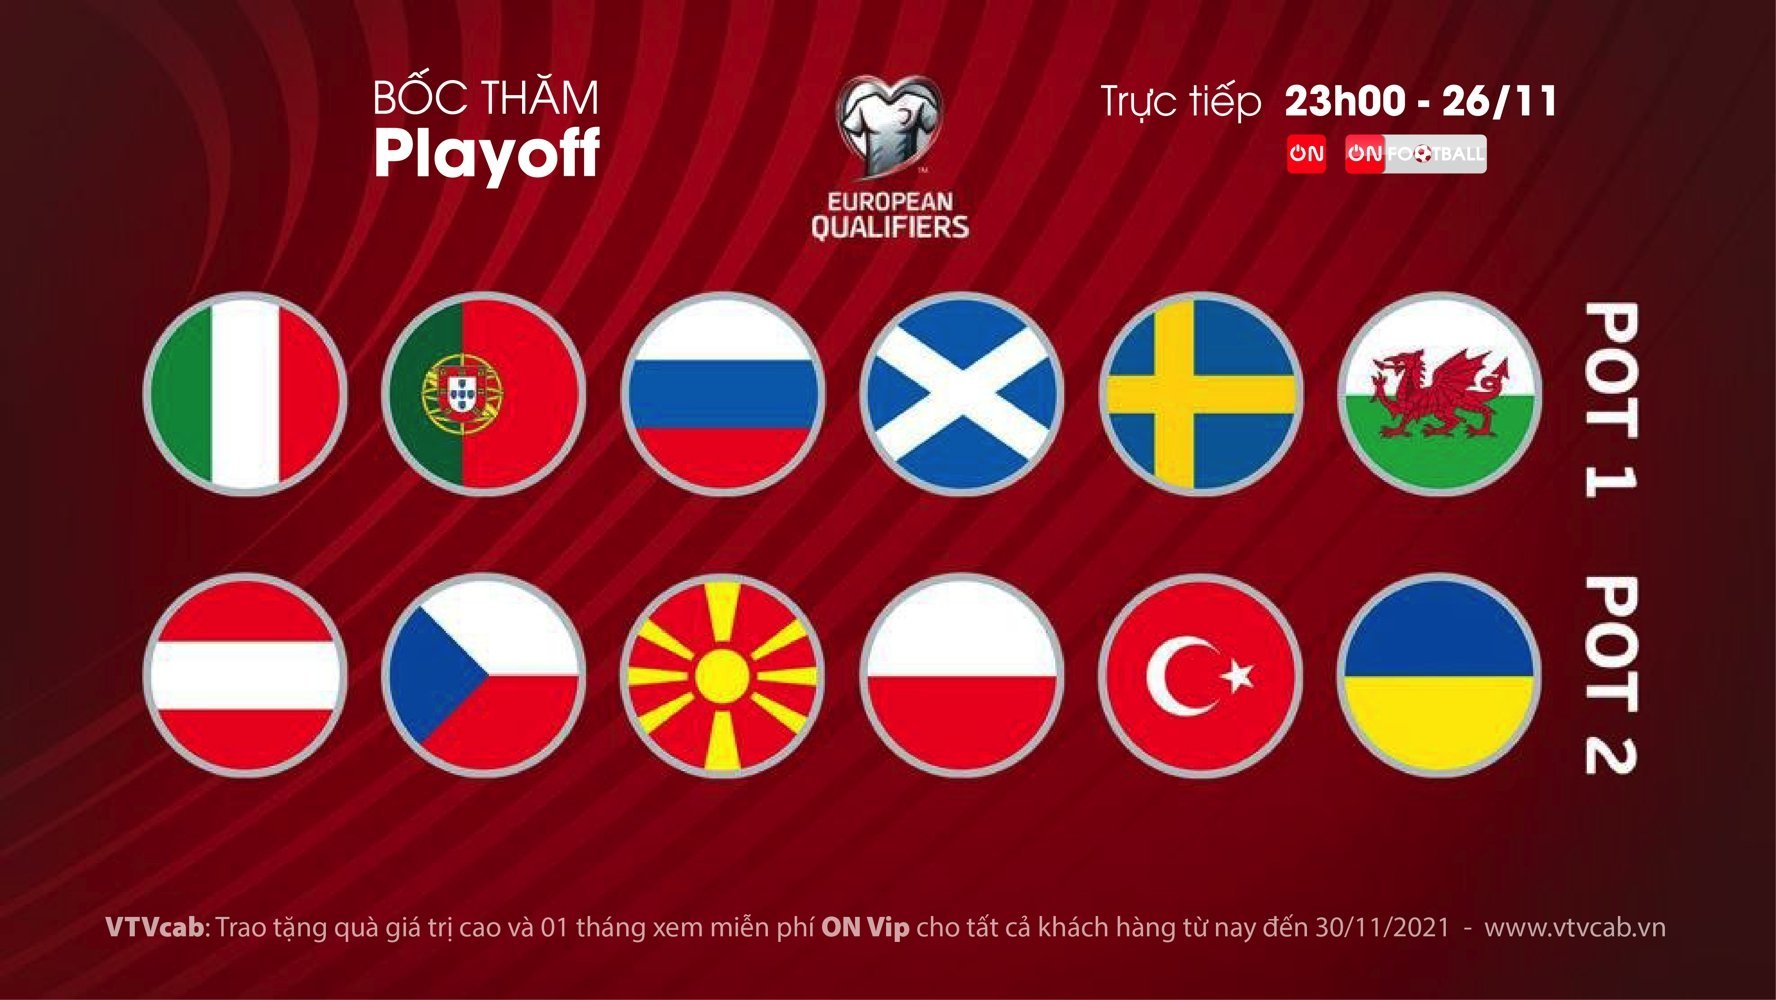 Xem bốc thăm play-off vòng loại World Cup 2022 khu vực châu Âu trên kênh nào? - Ảnh 3.